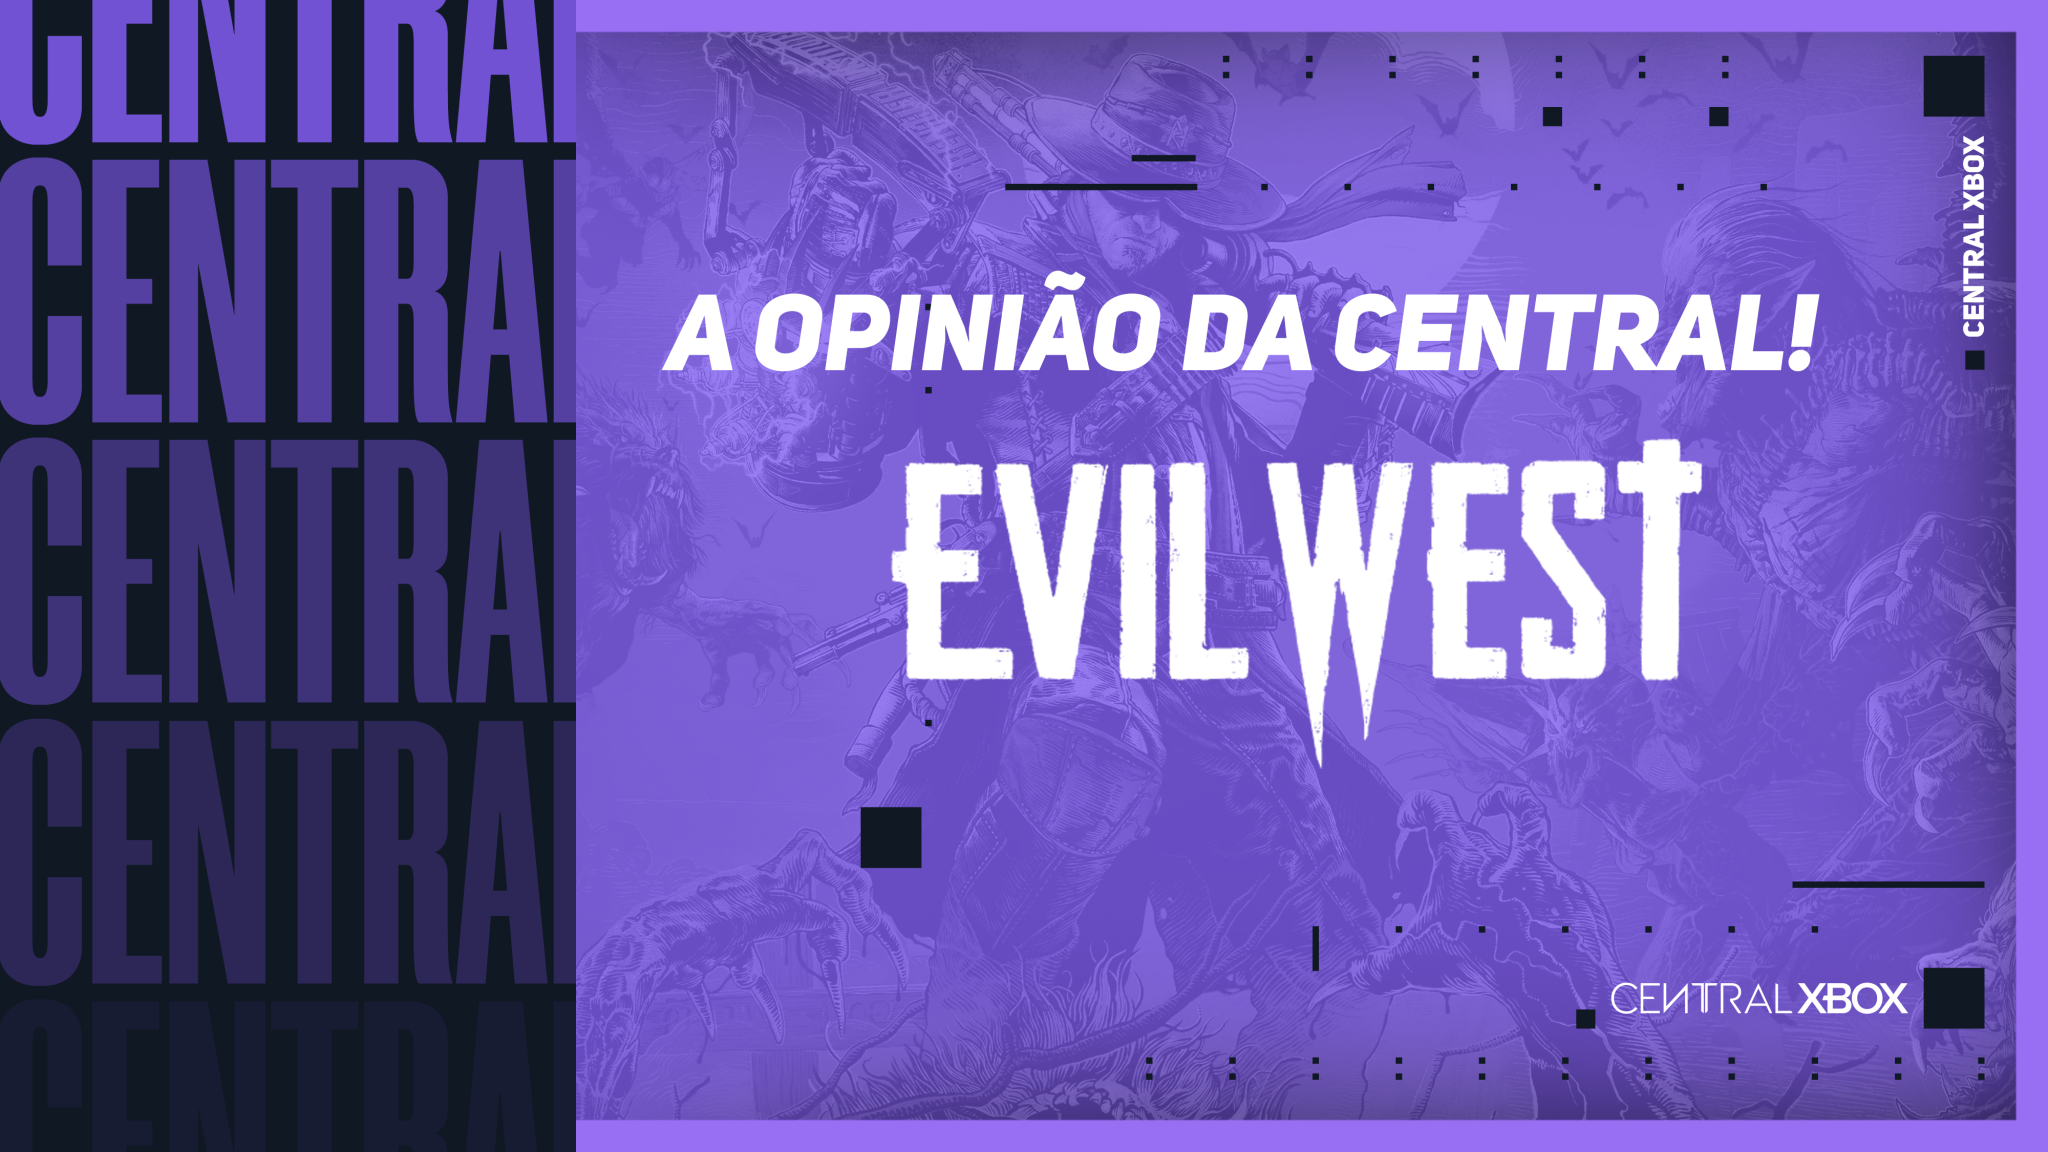 Evil West - O INÍCIO em Português no DIFÍCIL! Velho Oeste e